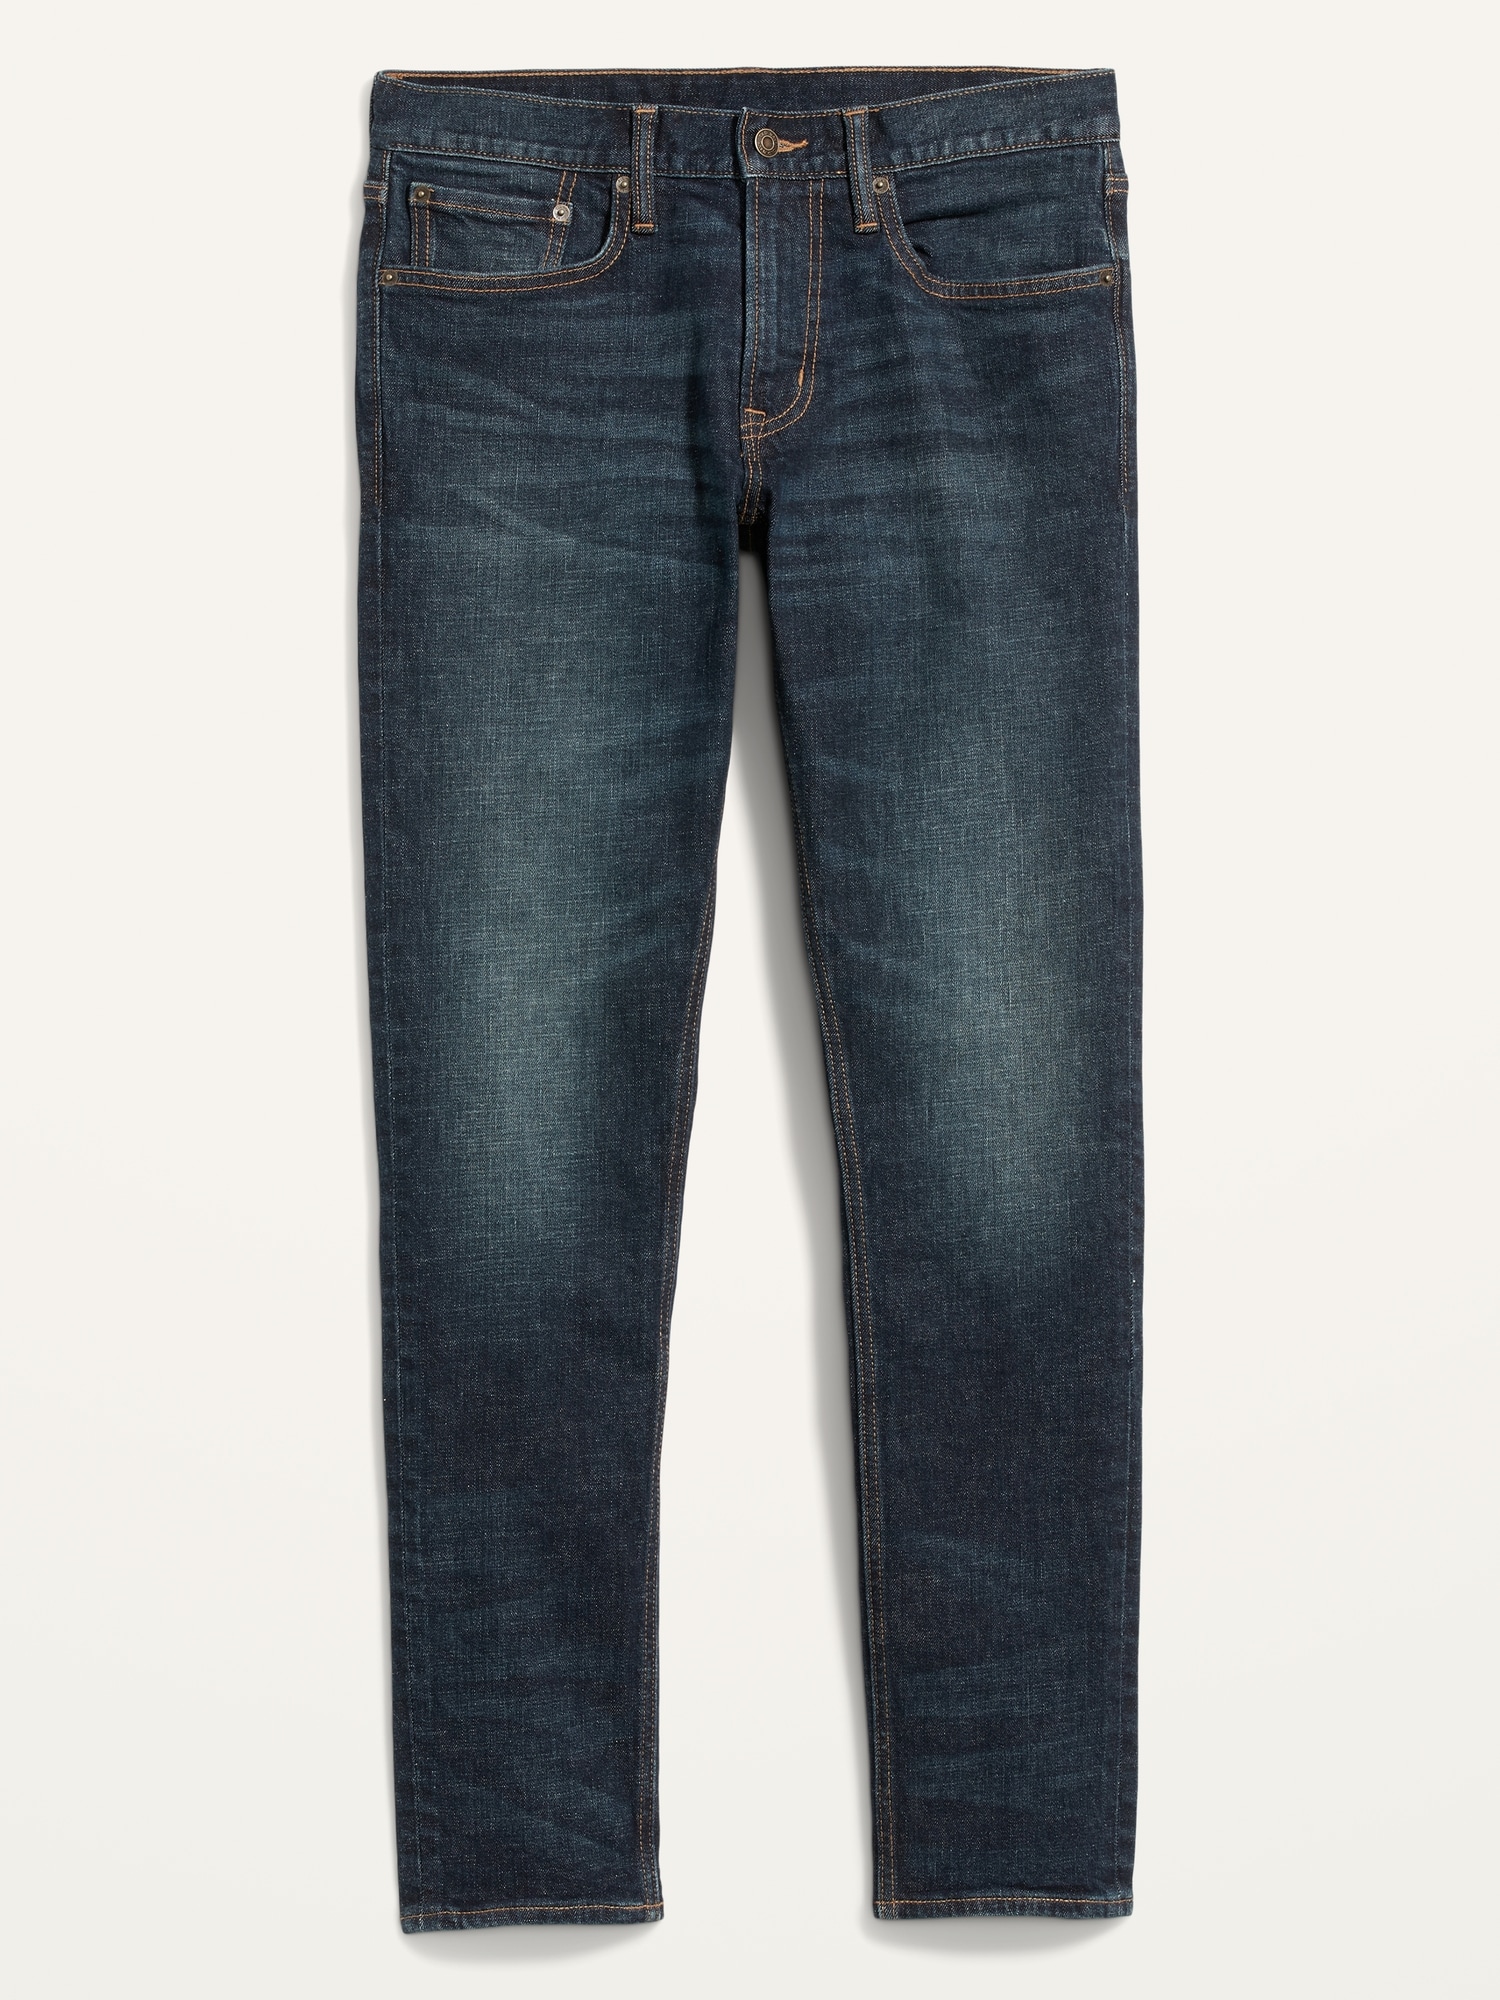 Buy Denim Blue Denim Men's Jeans Online | Tistabene - Tistabene